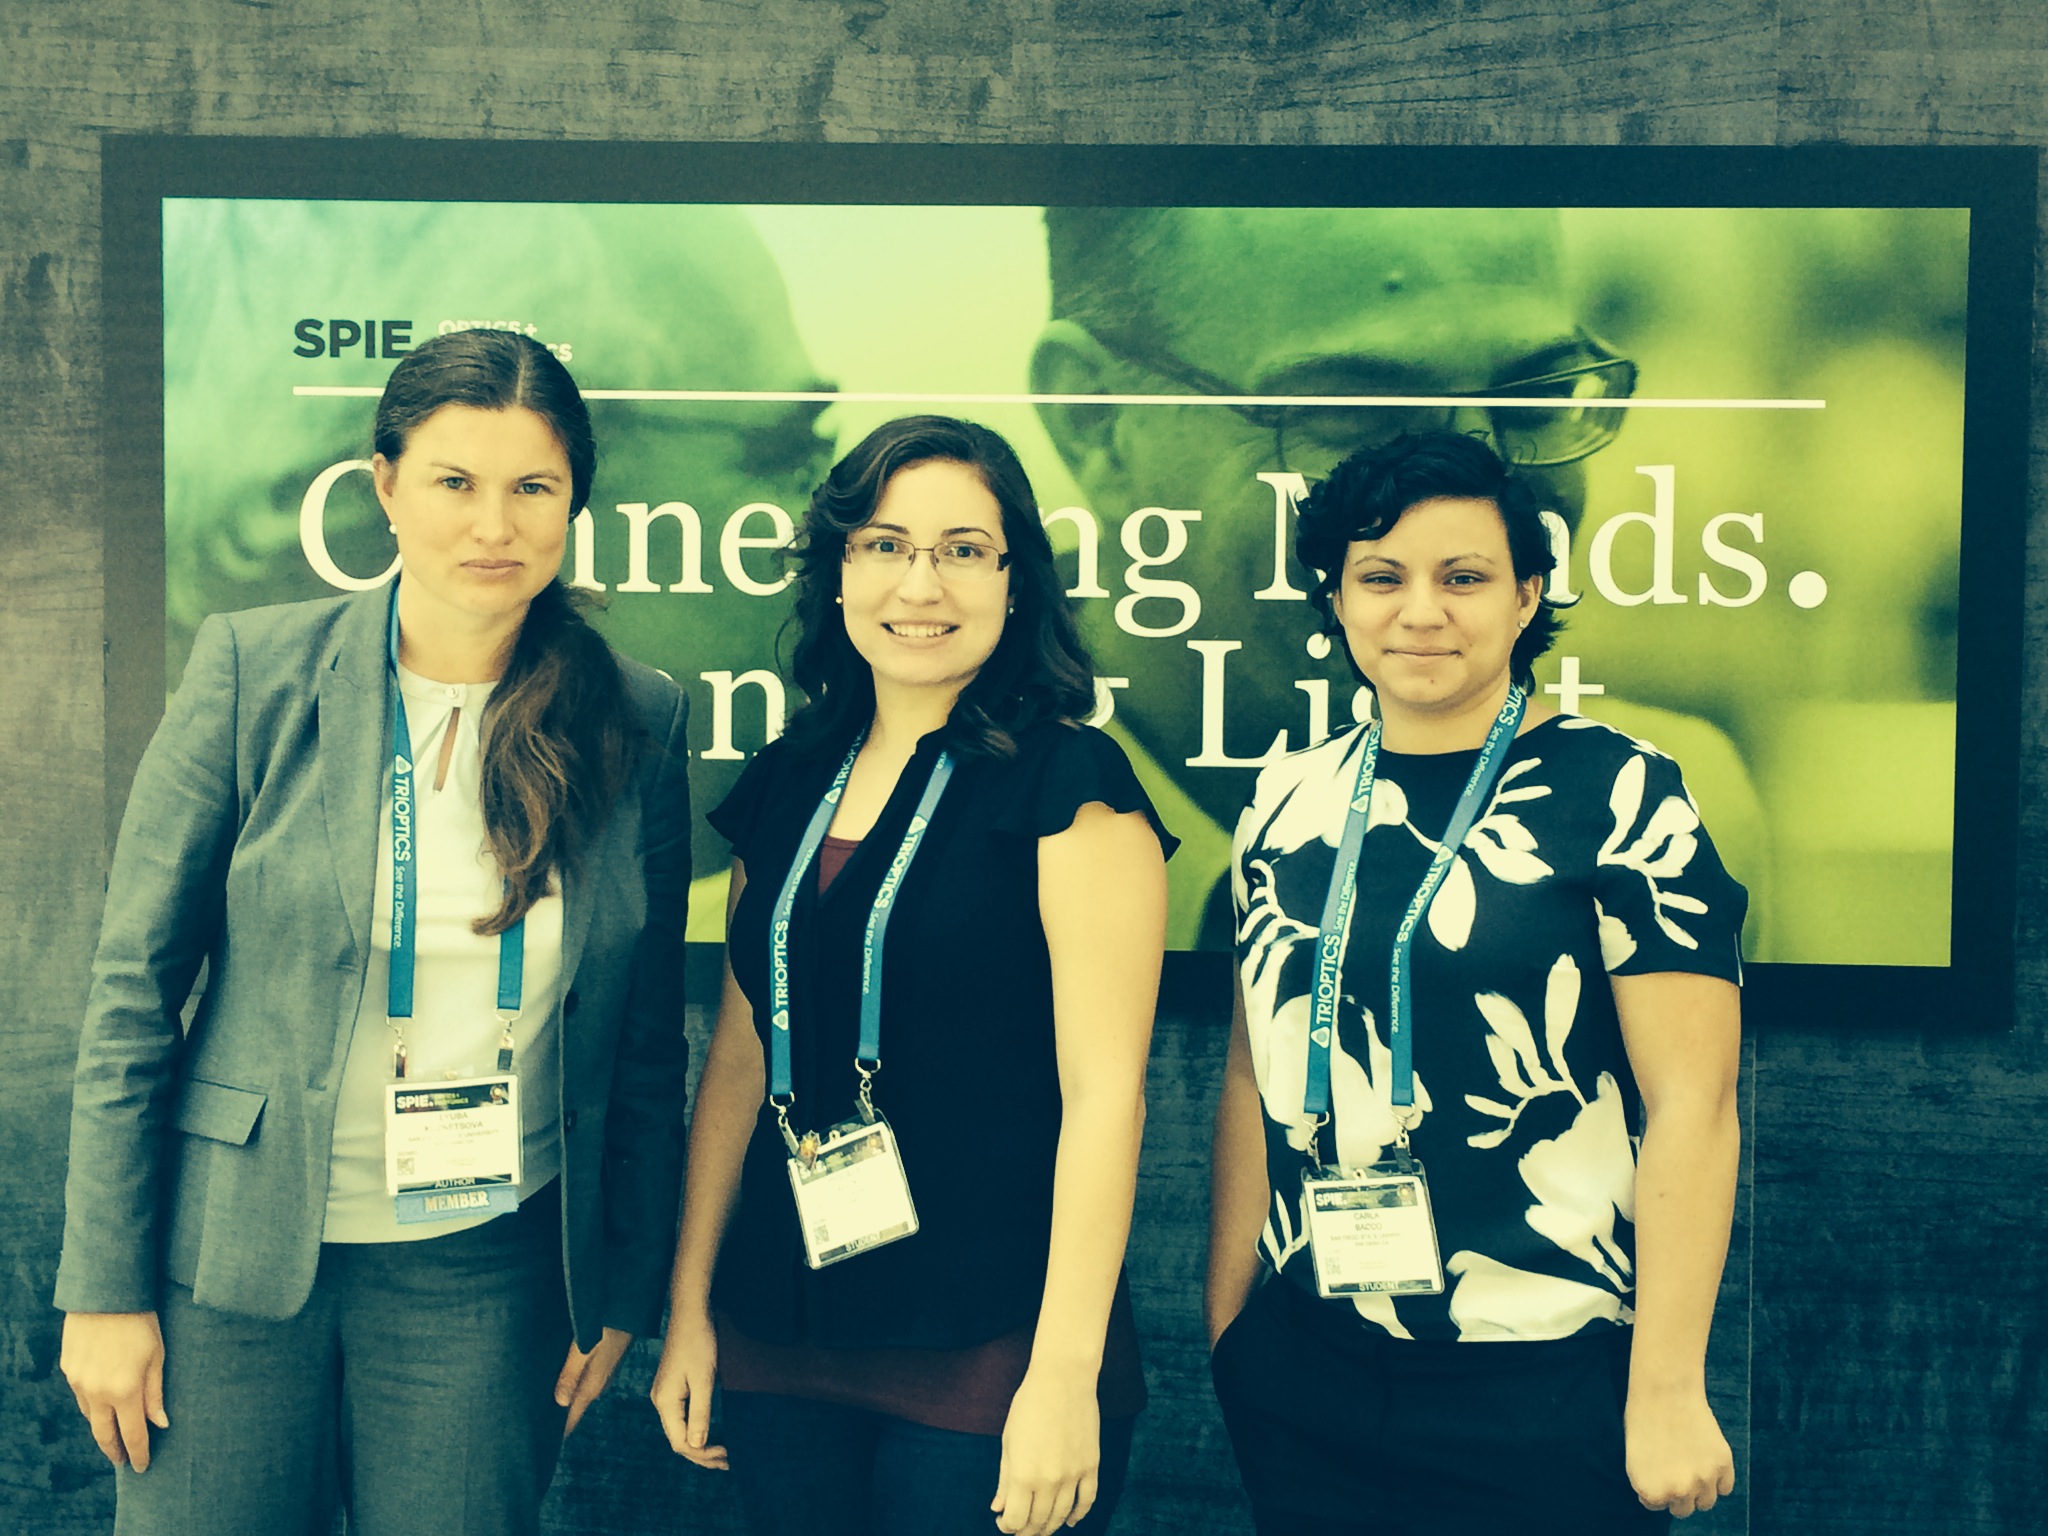 Dr. Kuznetsova, Priscilla Kelly, and Carla Bacco at SPIE 2015.